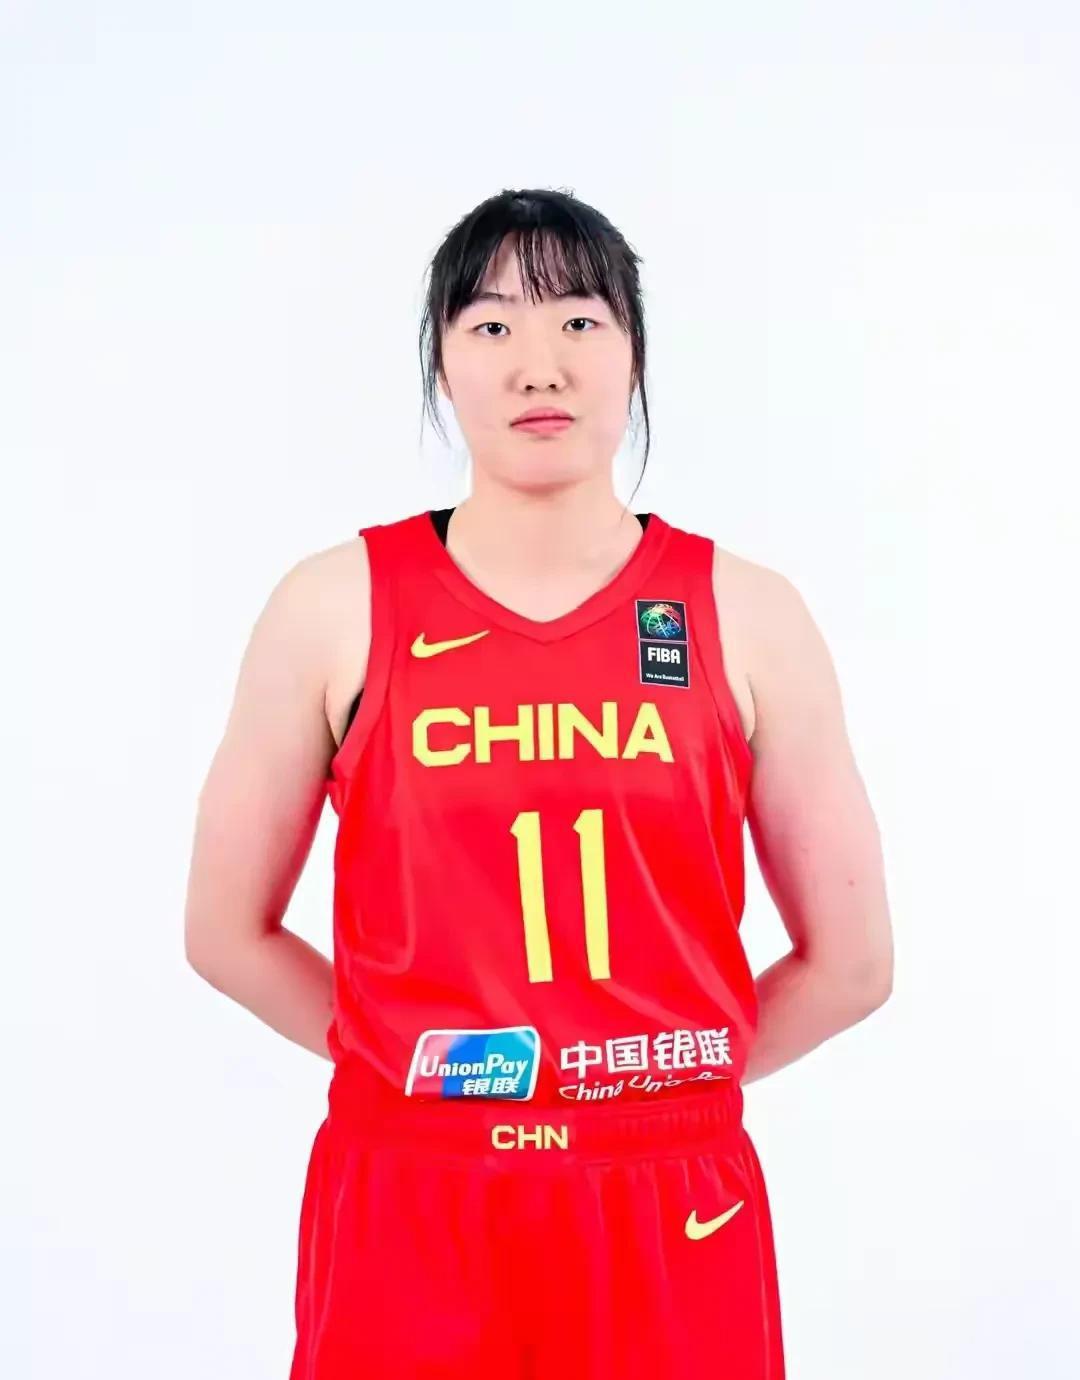 中国女篮89-44大胜黎巴嫩，看完比赛，我发现3个惊人的现象：
1、在夺得世界杯